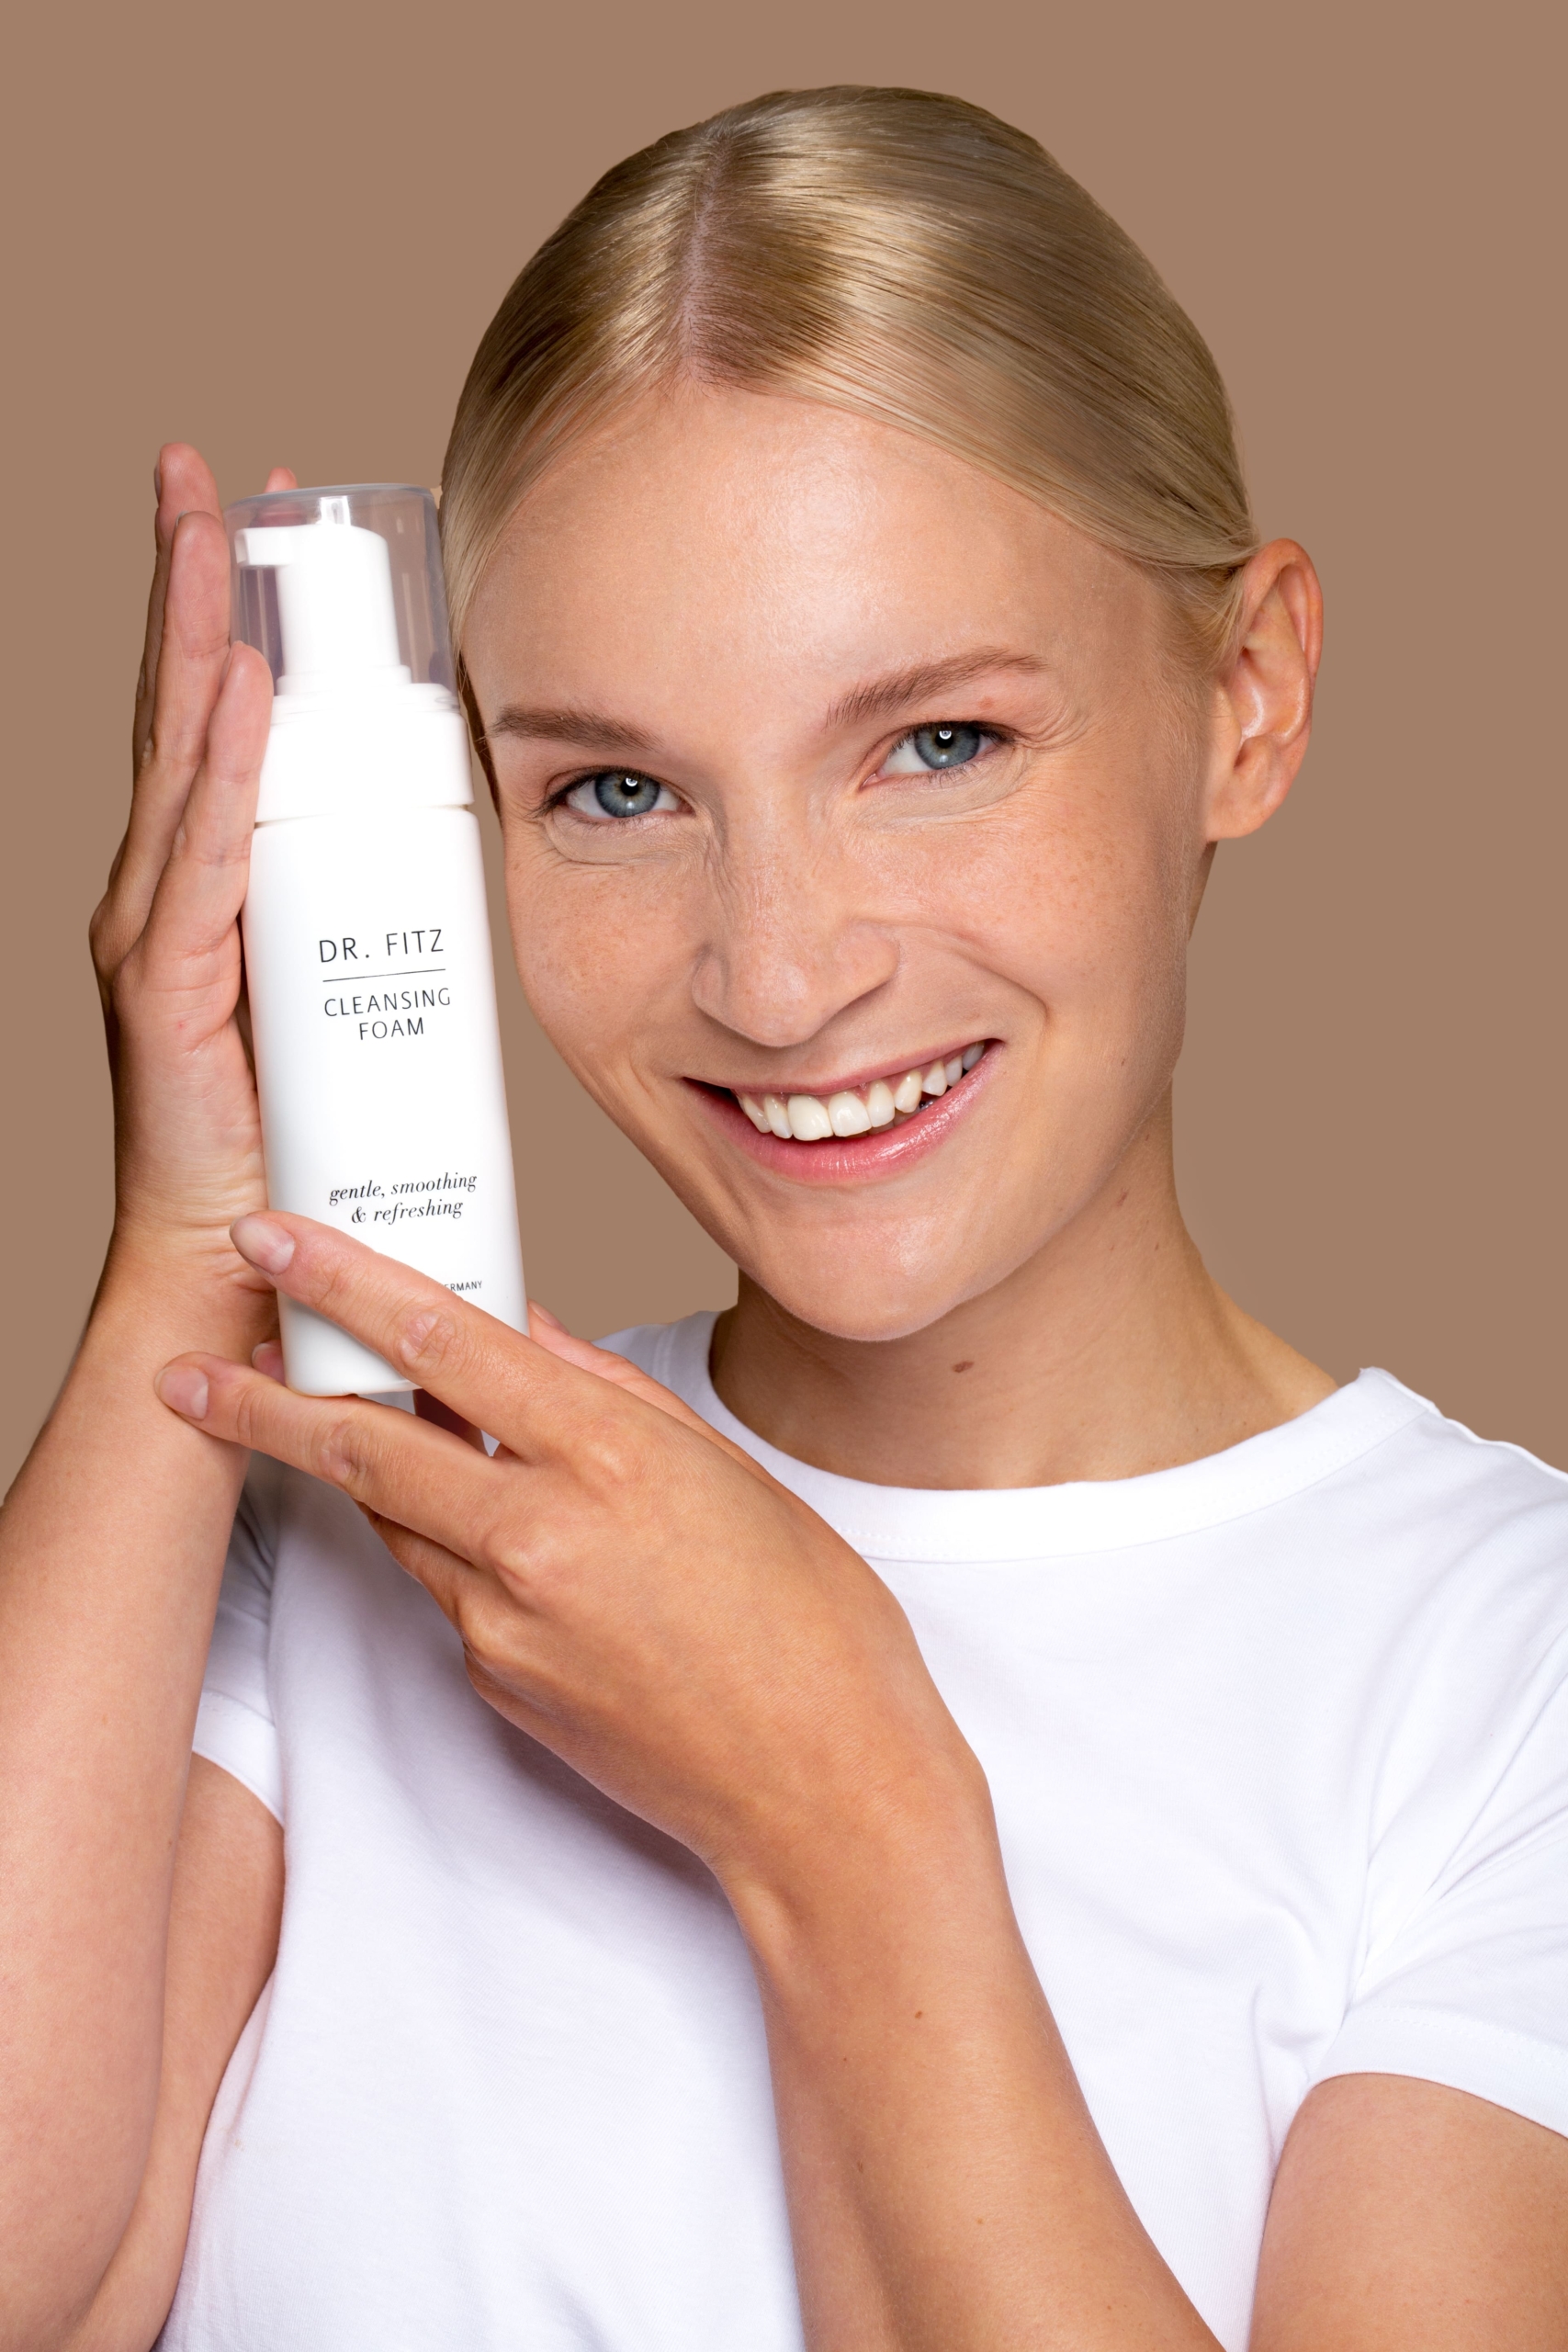 Junge Frau, blond, hellhäutig, blauäugig, schmiegt sich das Produkt Cleansing Foam an ihre Wange und lächelt.